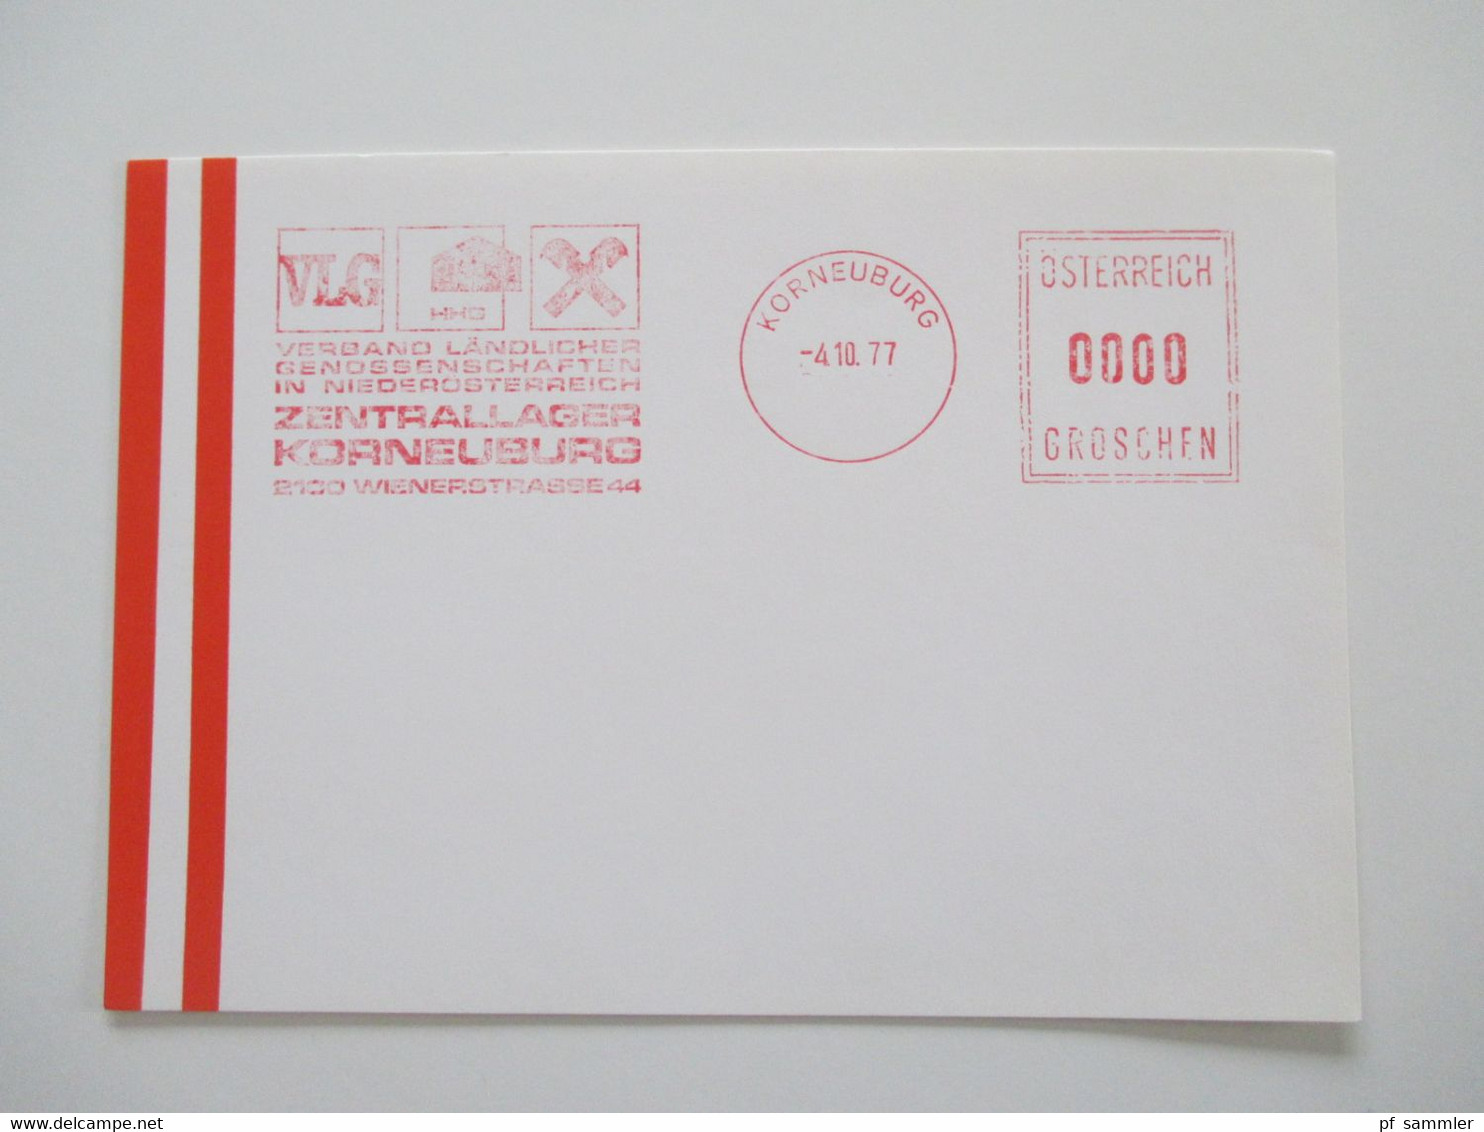 Österreich 1976 - 78 Freistempel Mit Wert 0000 Groschen Insgesamt 29 Stempelbelege / Blanko Karten Alles Verschiedene St - Lettres & Documents